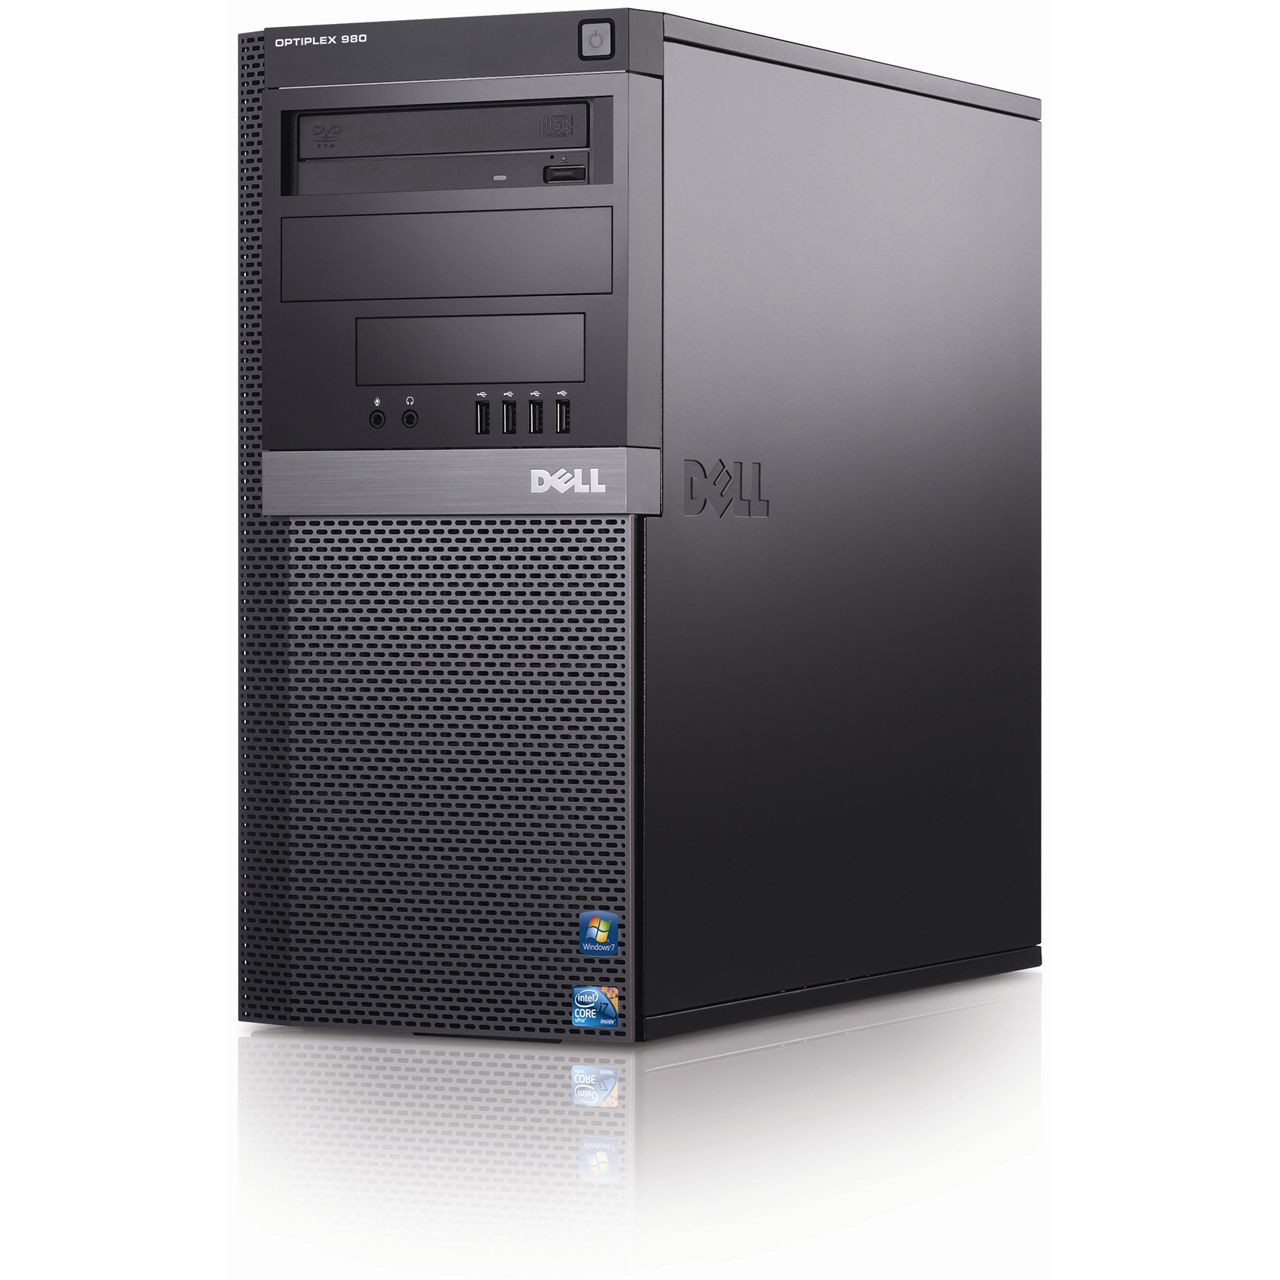 Refurbished Dell Optiplex 980 Mini Tower - Quad Core i7 desktop computer